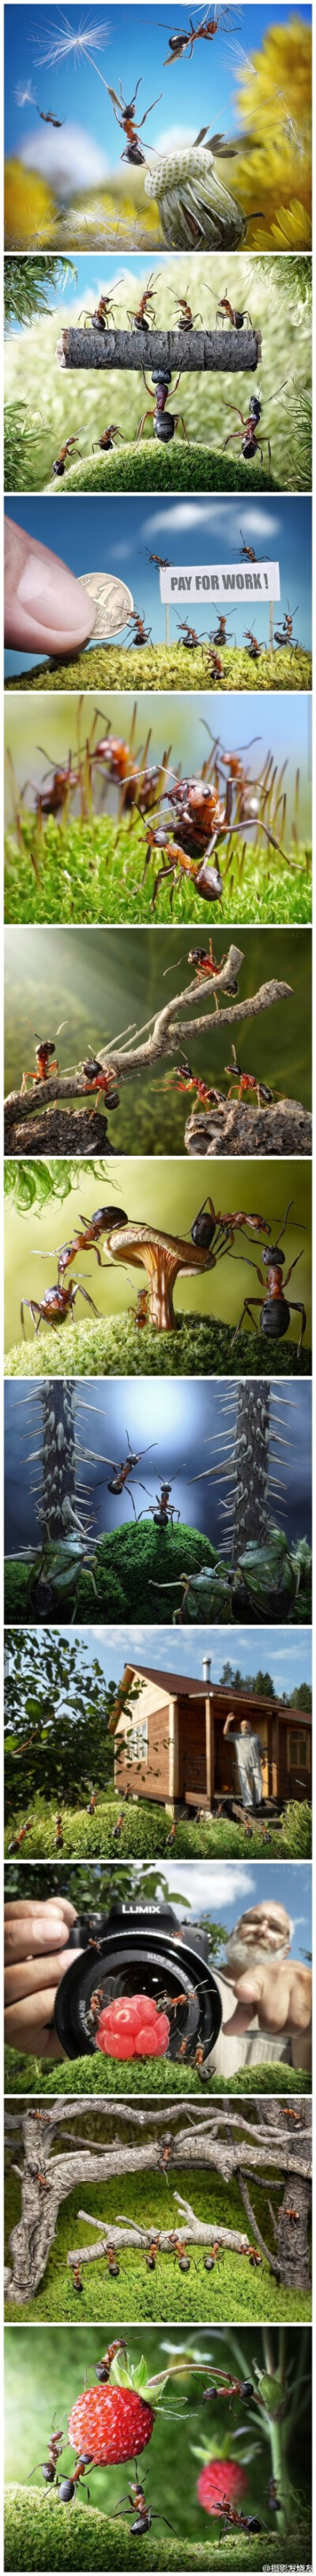 蚂蚁"微生活"